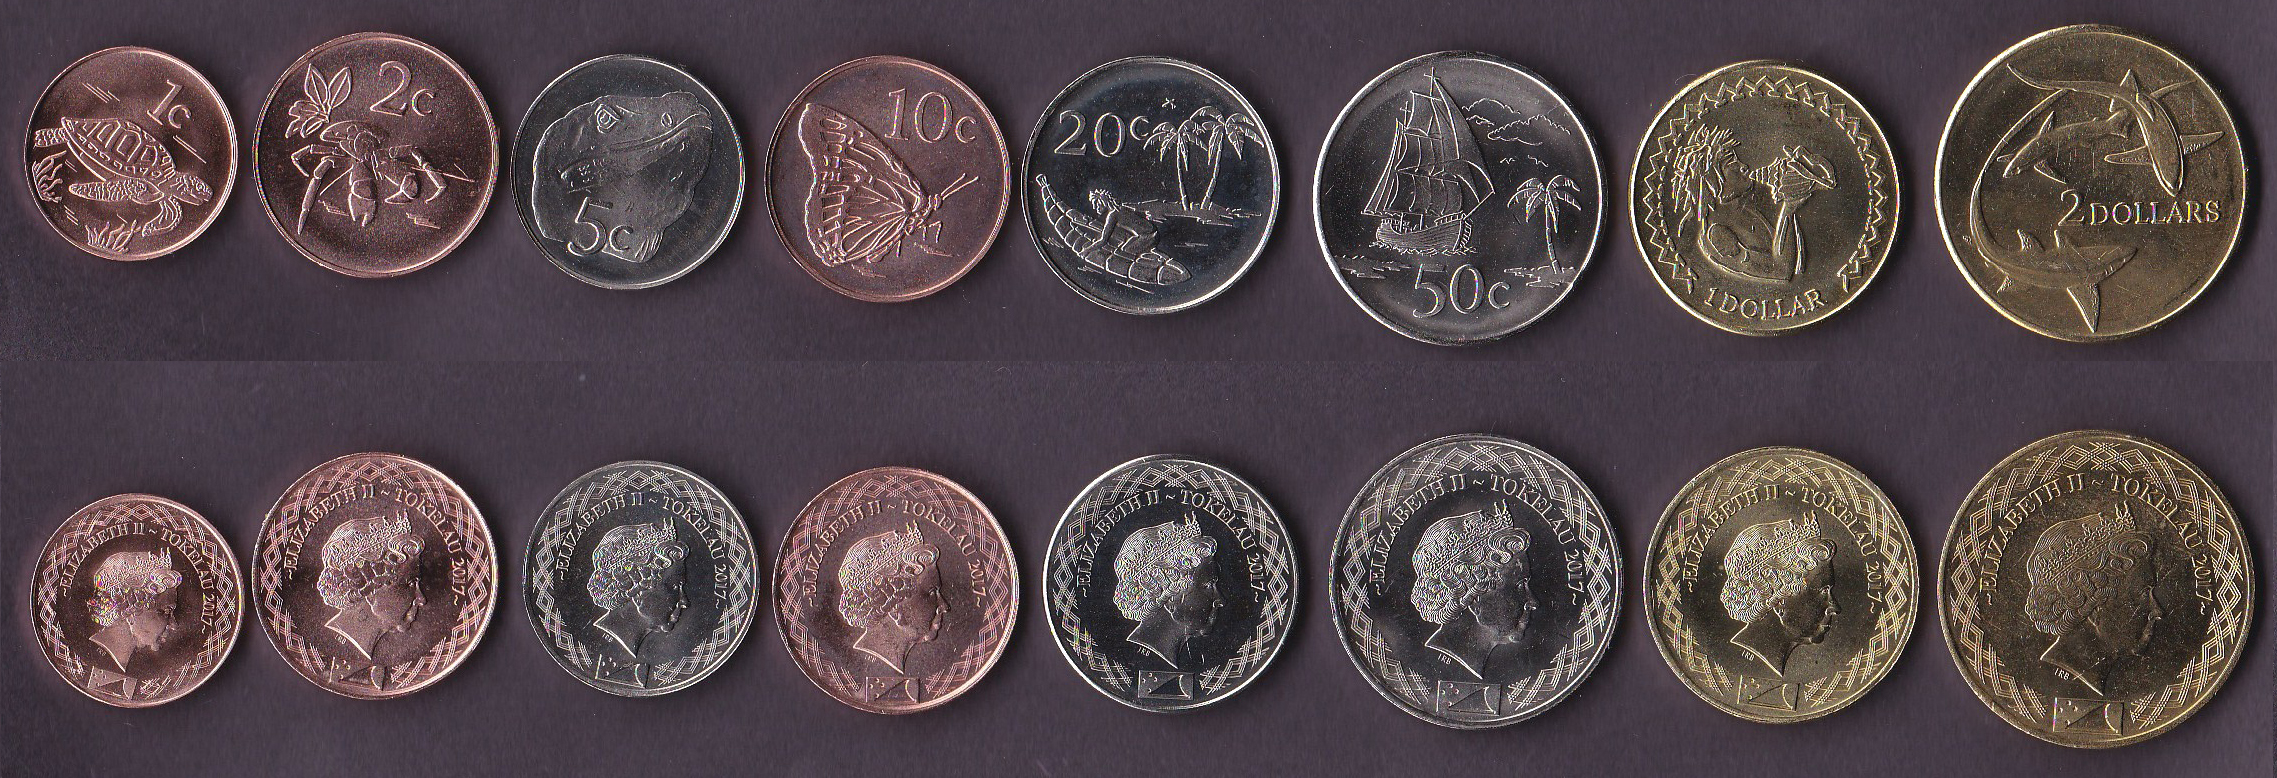 Первая известная монета. Монеты Токелау. Монеты острова Токелау. Набор монет Токелау. Море монет.